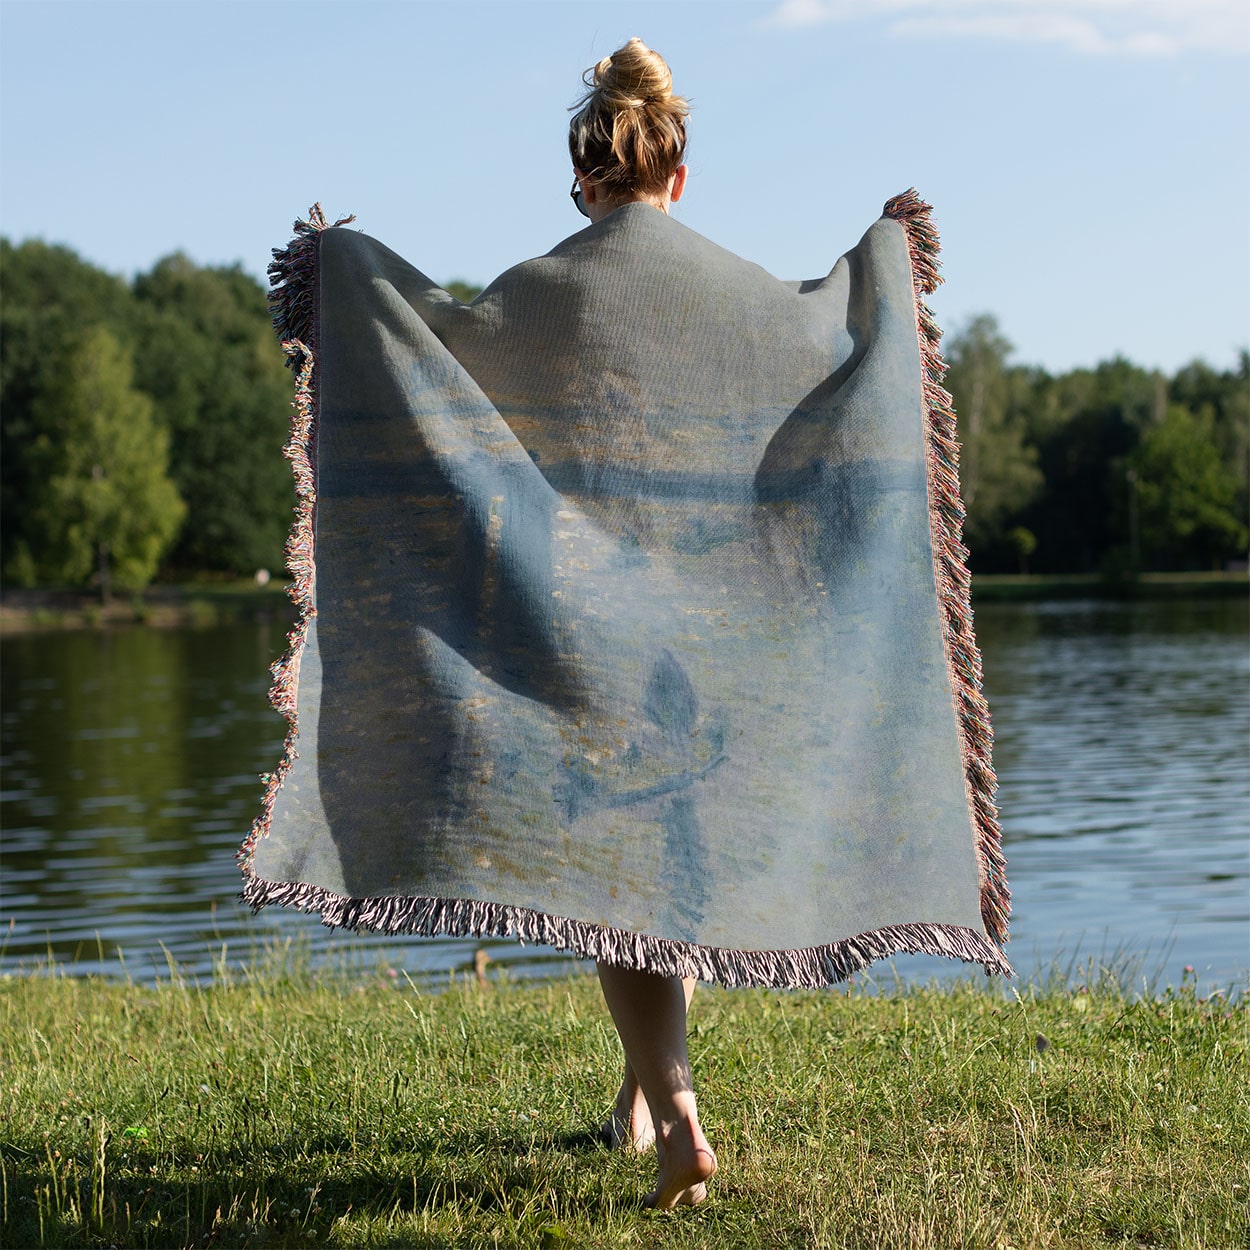 Dusty Light Blue Woven Blanket Held on a Woman's Back Outside